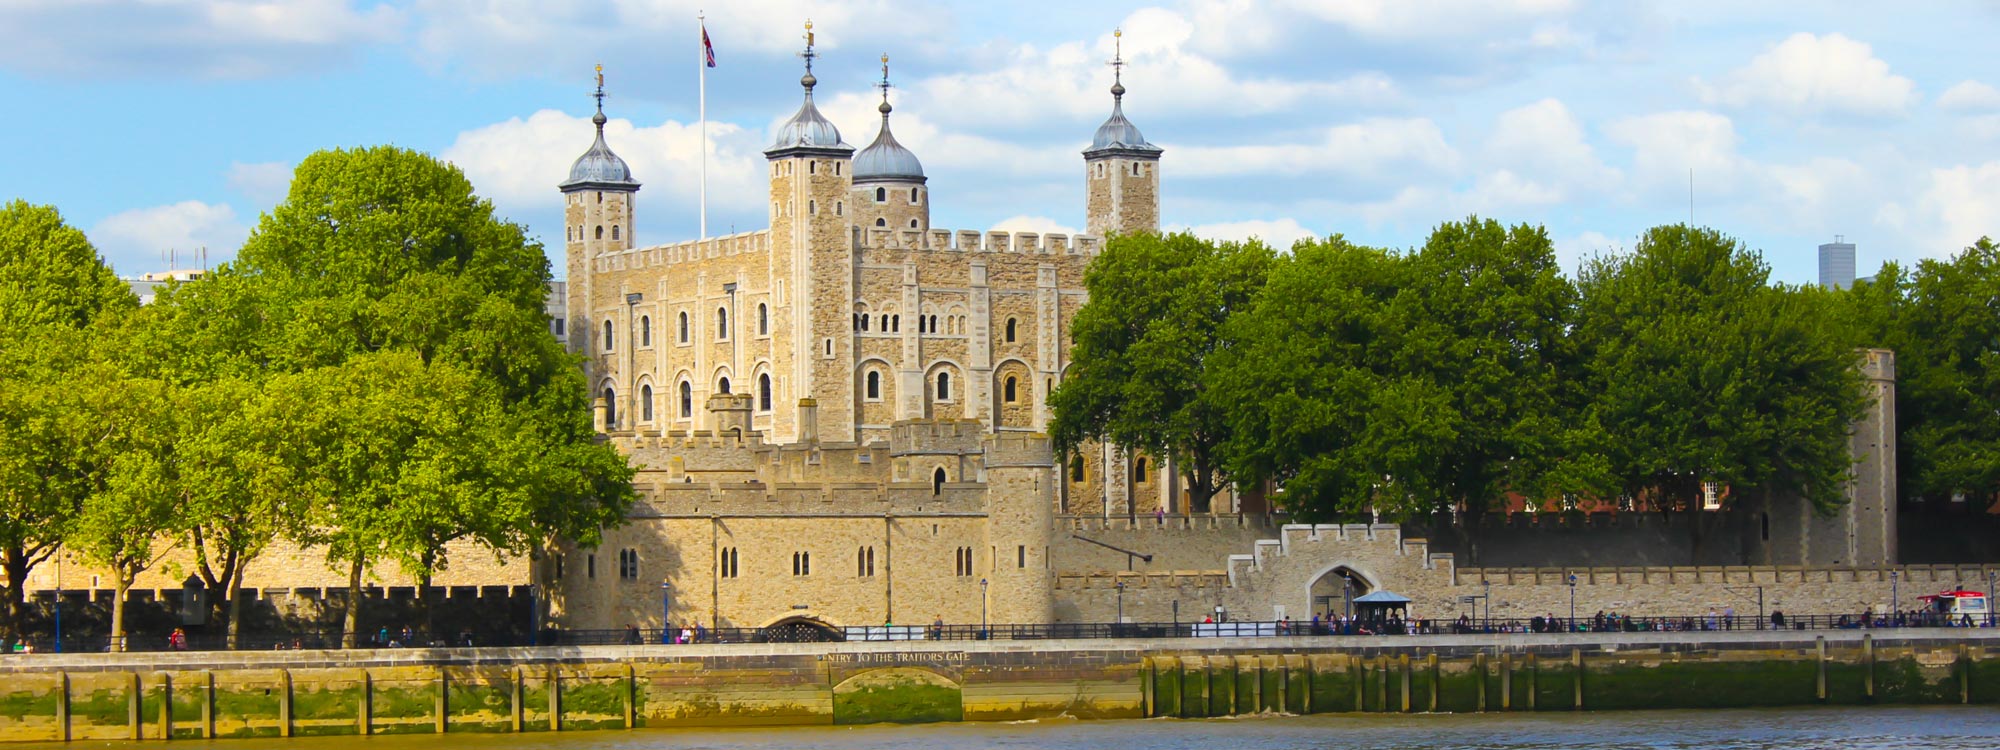 Der mächtige Tower of London